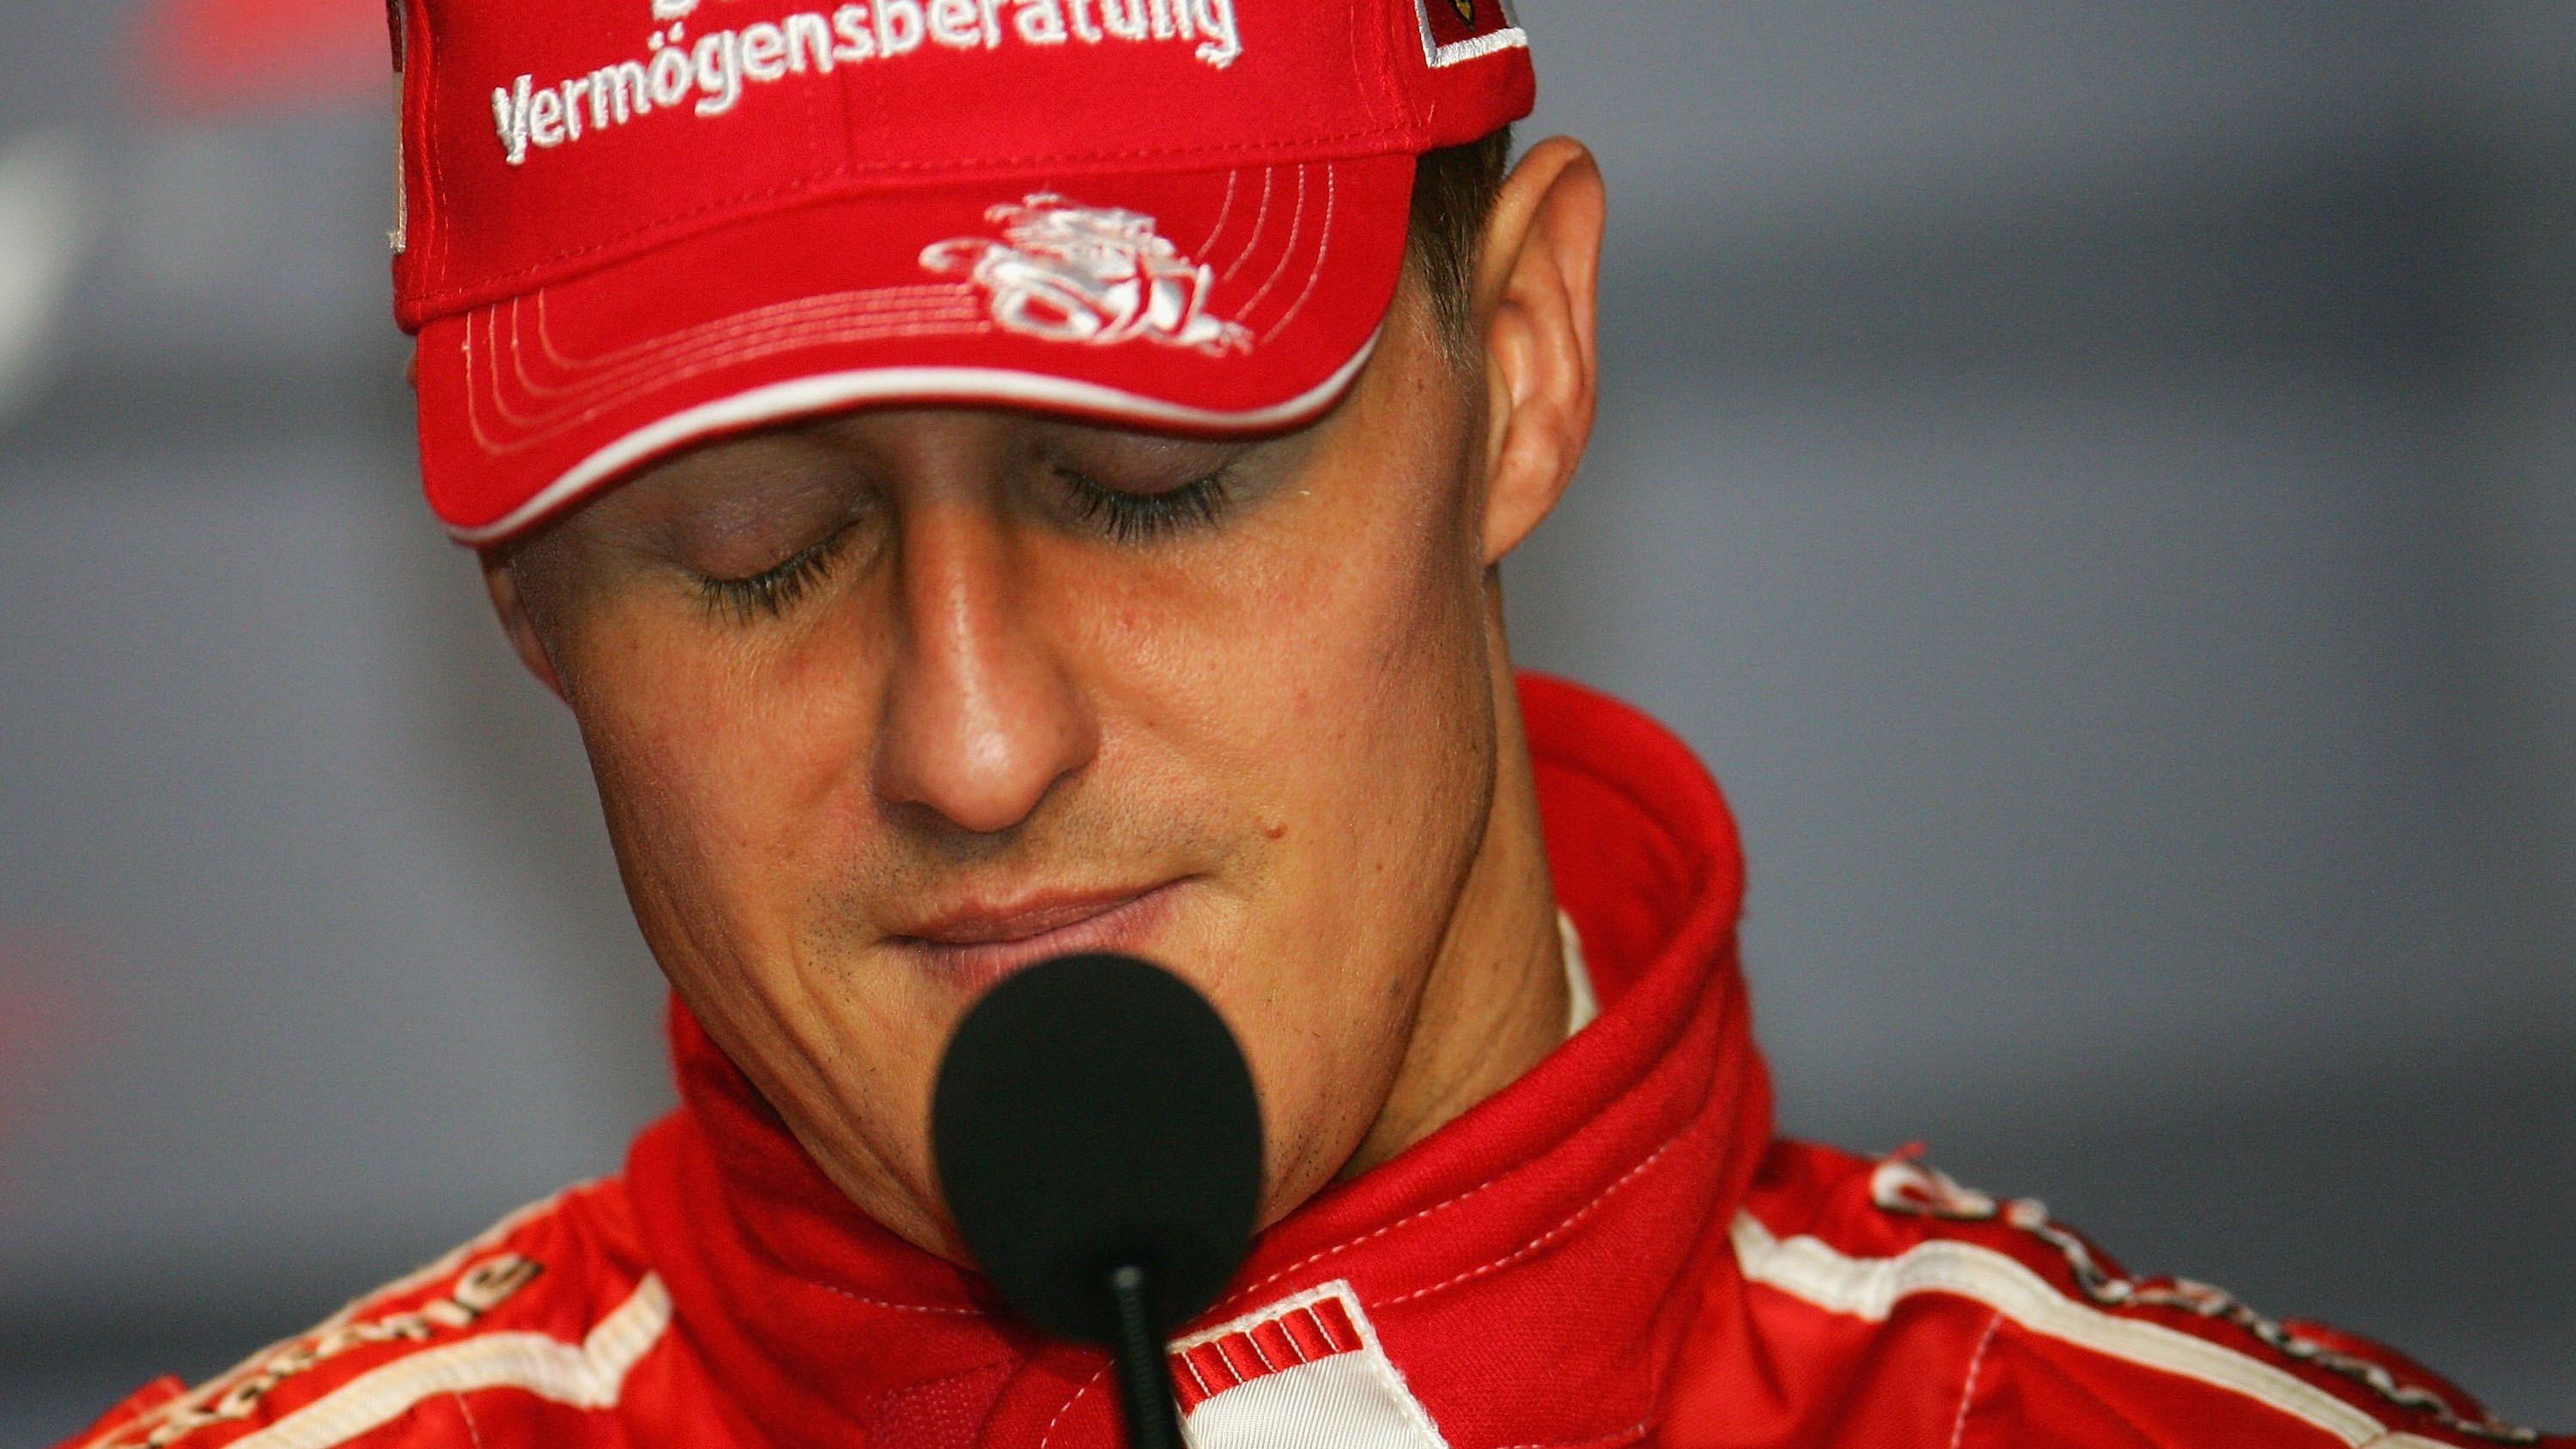 <strong>Schumi zieht Schlussstrich und verkündet Karriereende</strong><br>Im Jahr 2006 war Ferrari wieder konkurrenzfähig, Schumacher konnte mit Alonso um den WM-Titel kämpfen. Dennoch entschloss sich "Schumi" bereits während der Saison, am Jahresende seine Karriere zu beenden. Auf einer emotionalen PK nach dem Ferrari-Heimrennen in Monza gab er seine Entscheidung bekannt.